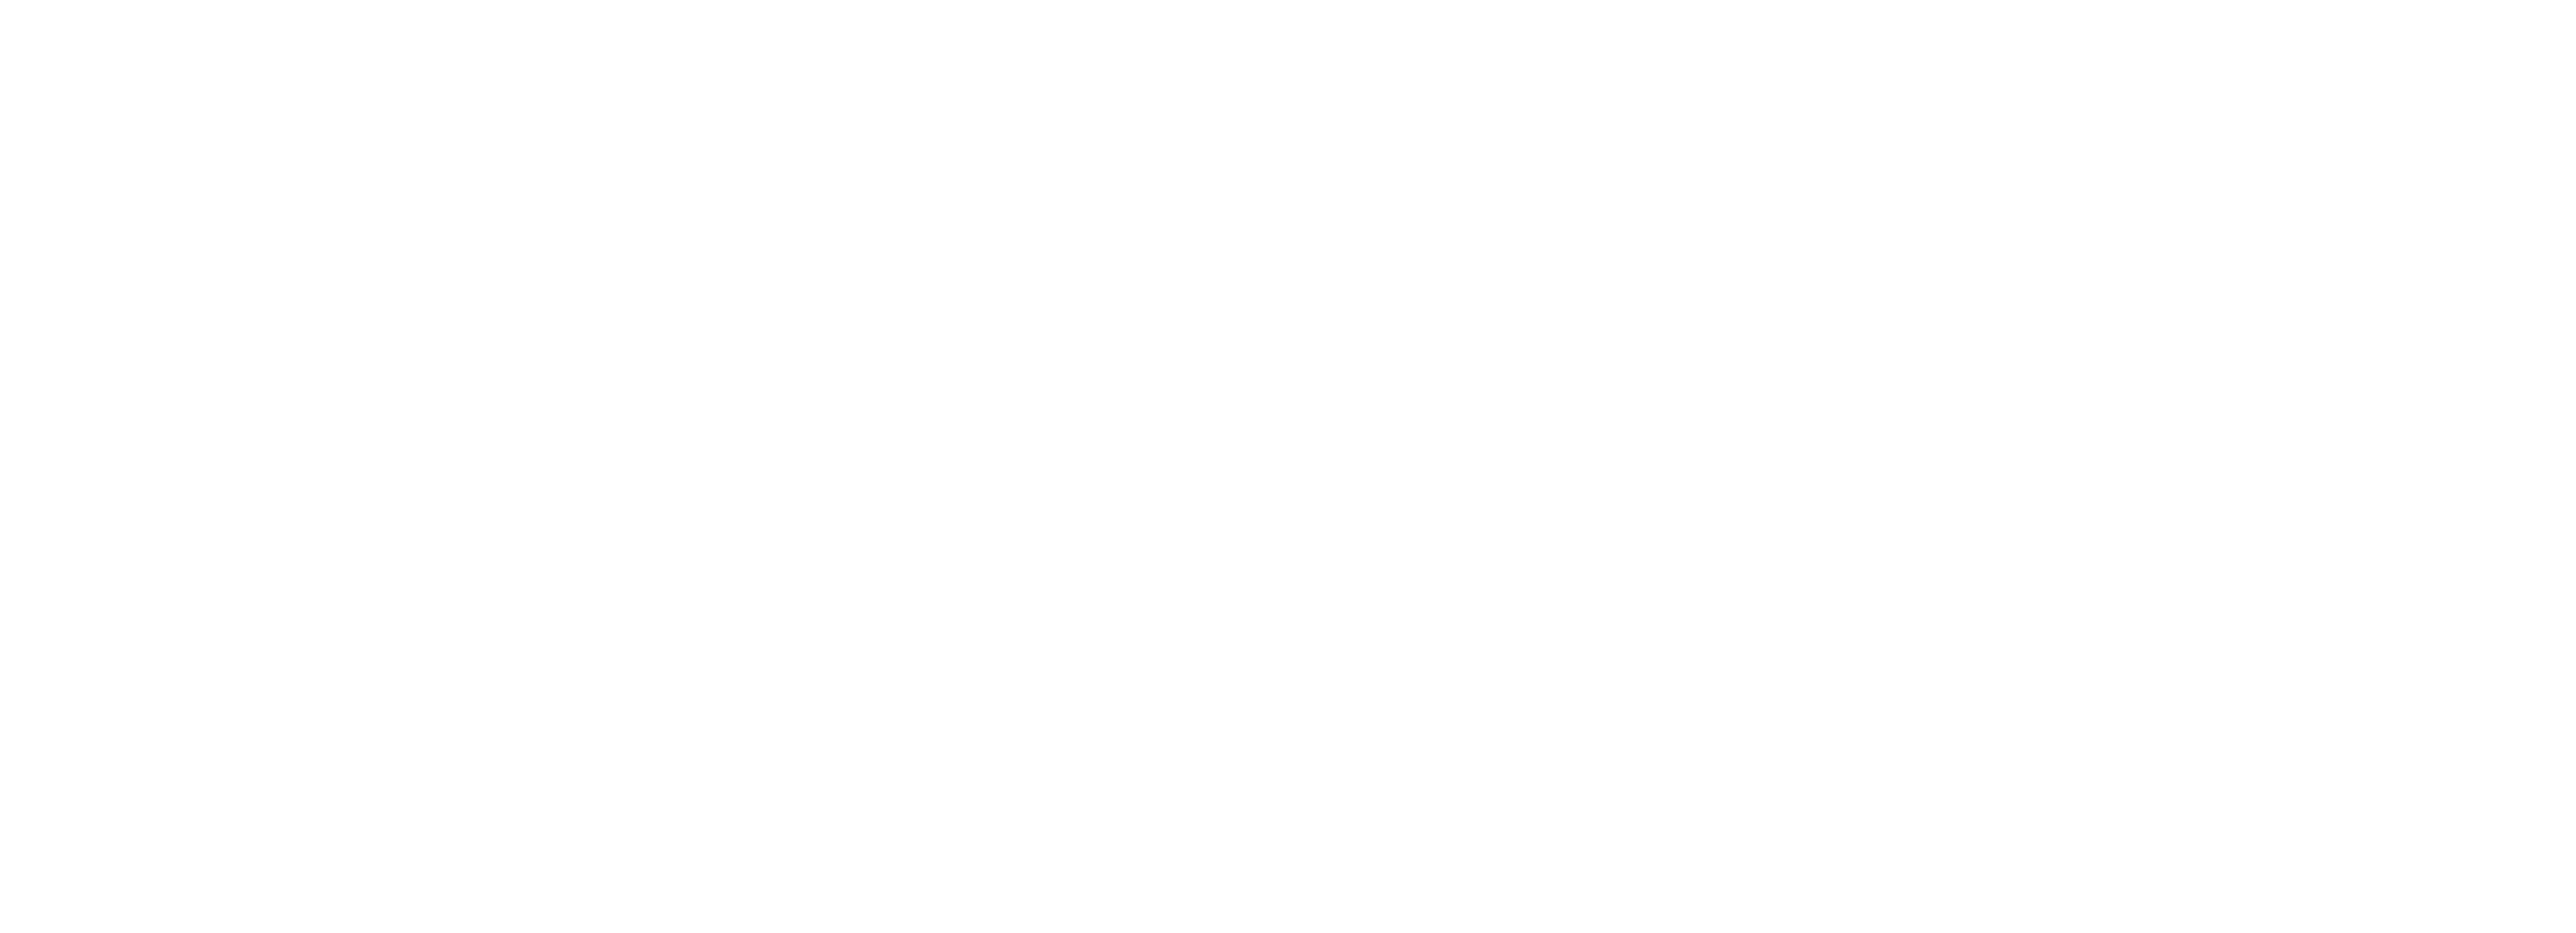 x308.net